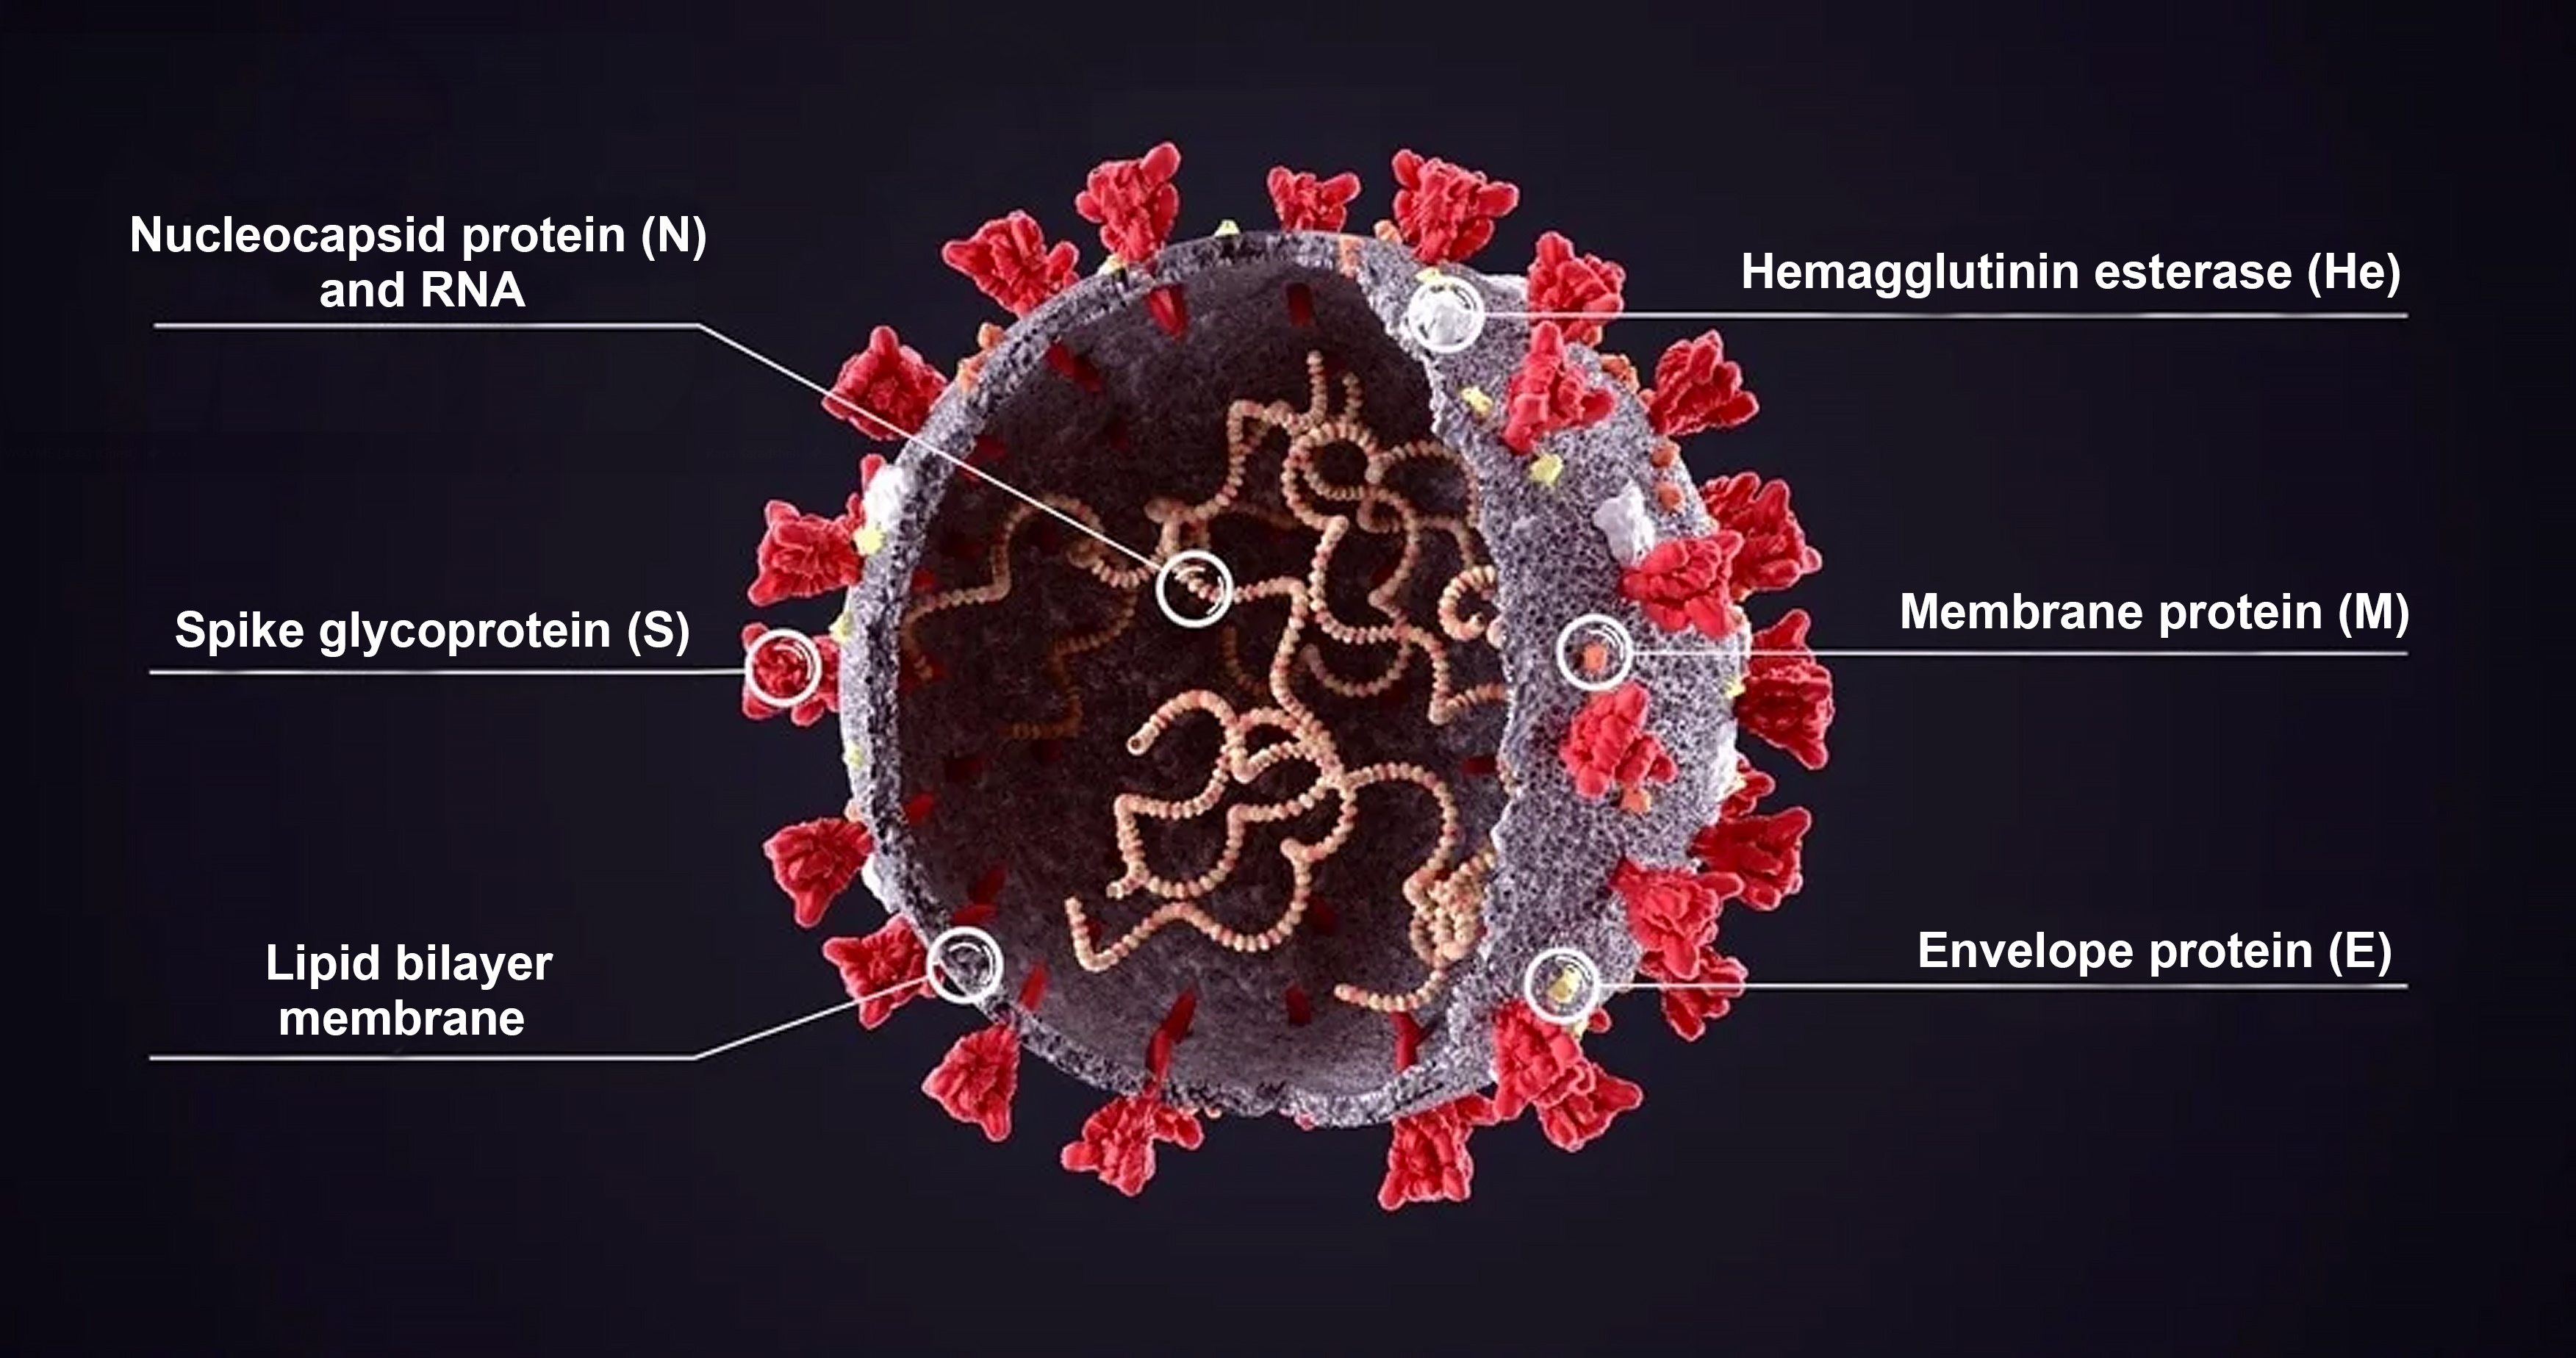 พรมแดนแห่งวิทยาศาสตร์丨SARS-CoV-2 Pseudoviruses